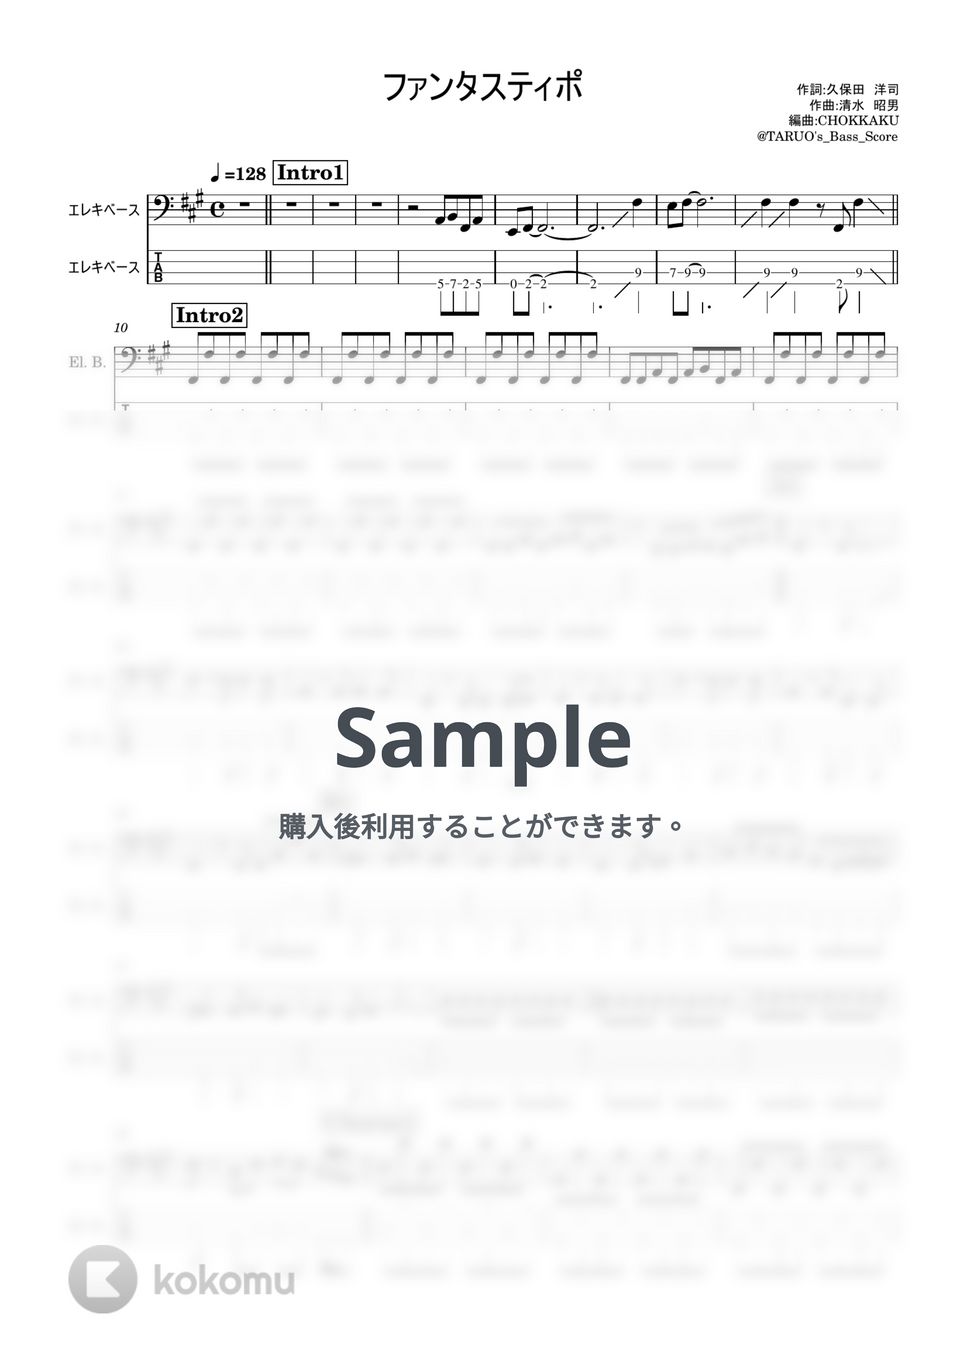 トラジ・ハイジ - ファンタスティポ (ベース/楽譜/TAB) by TARUO's_Bass_Score